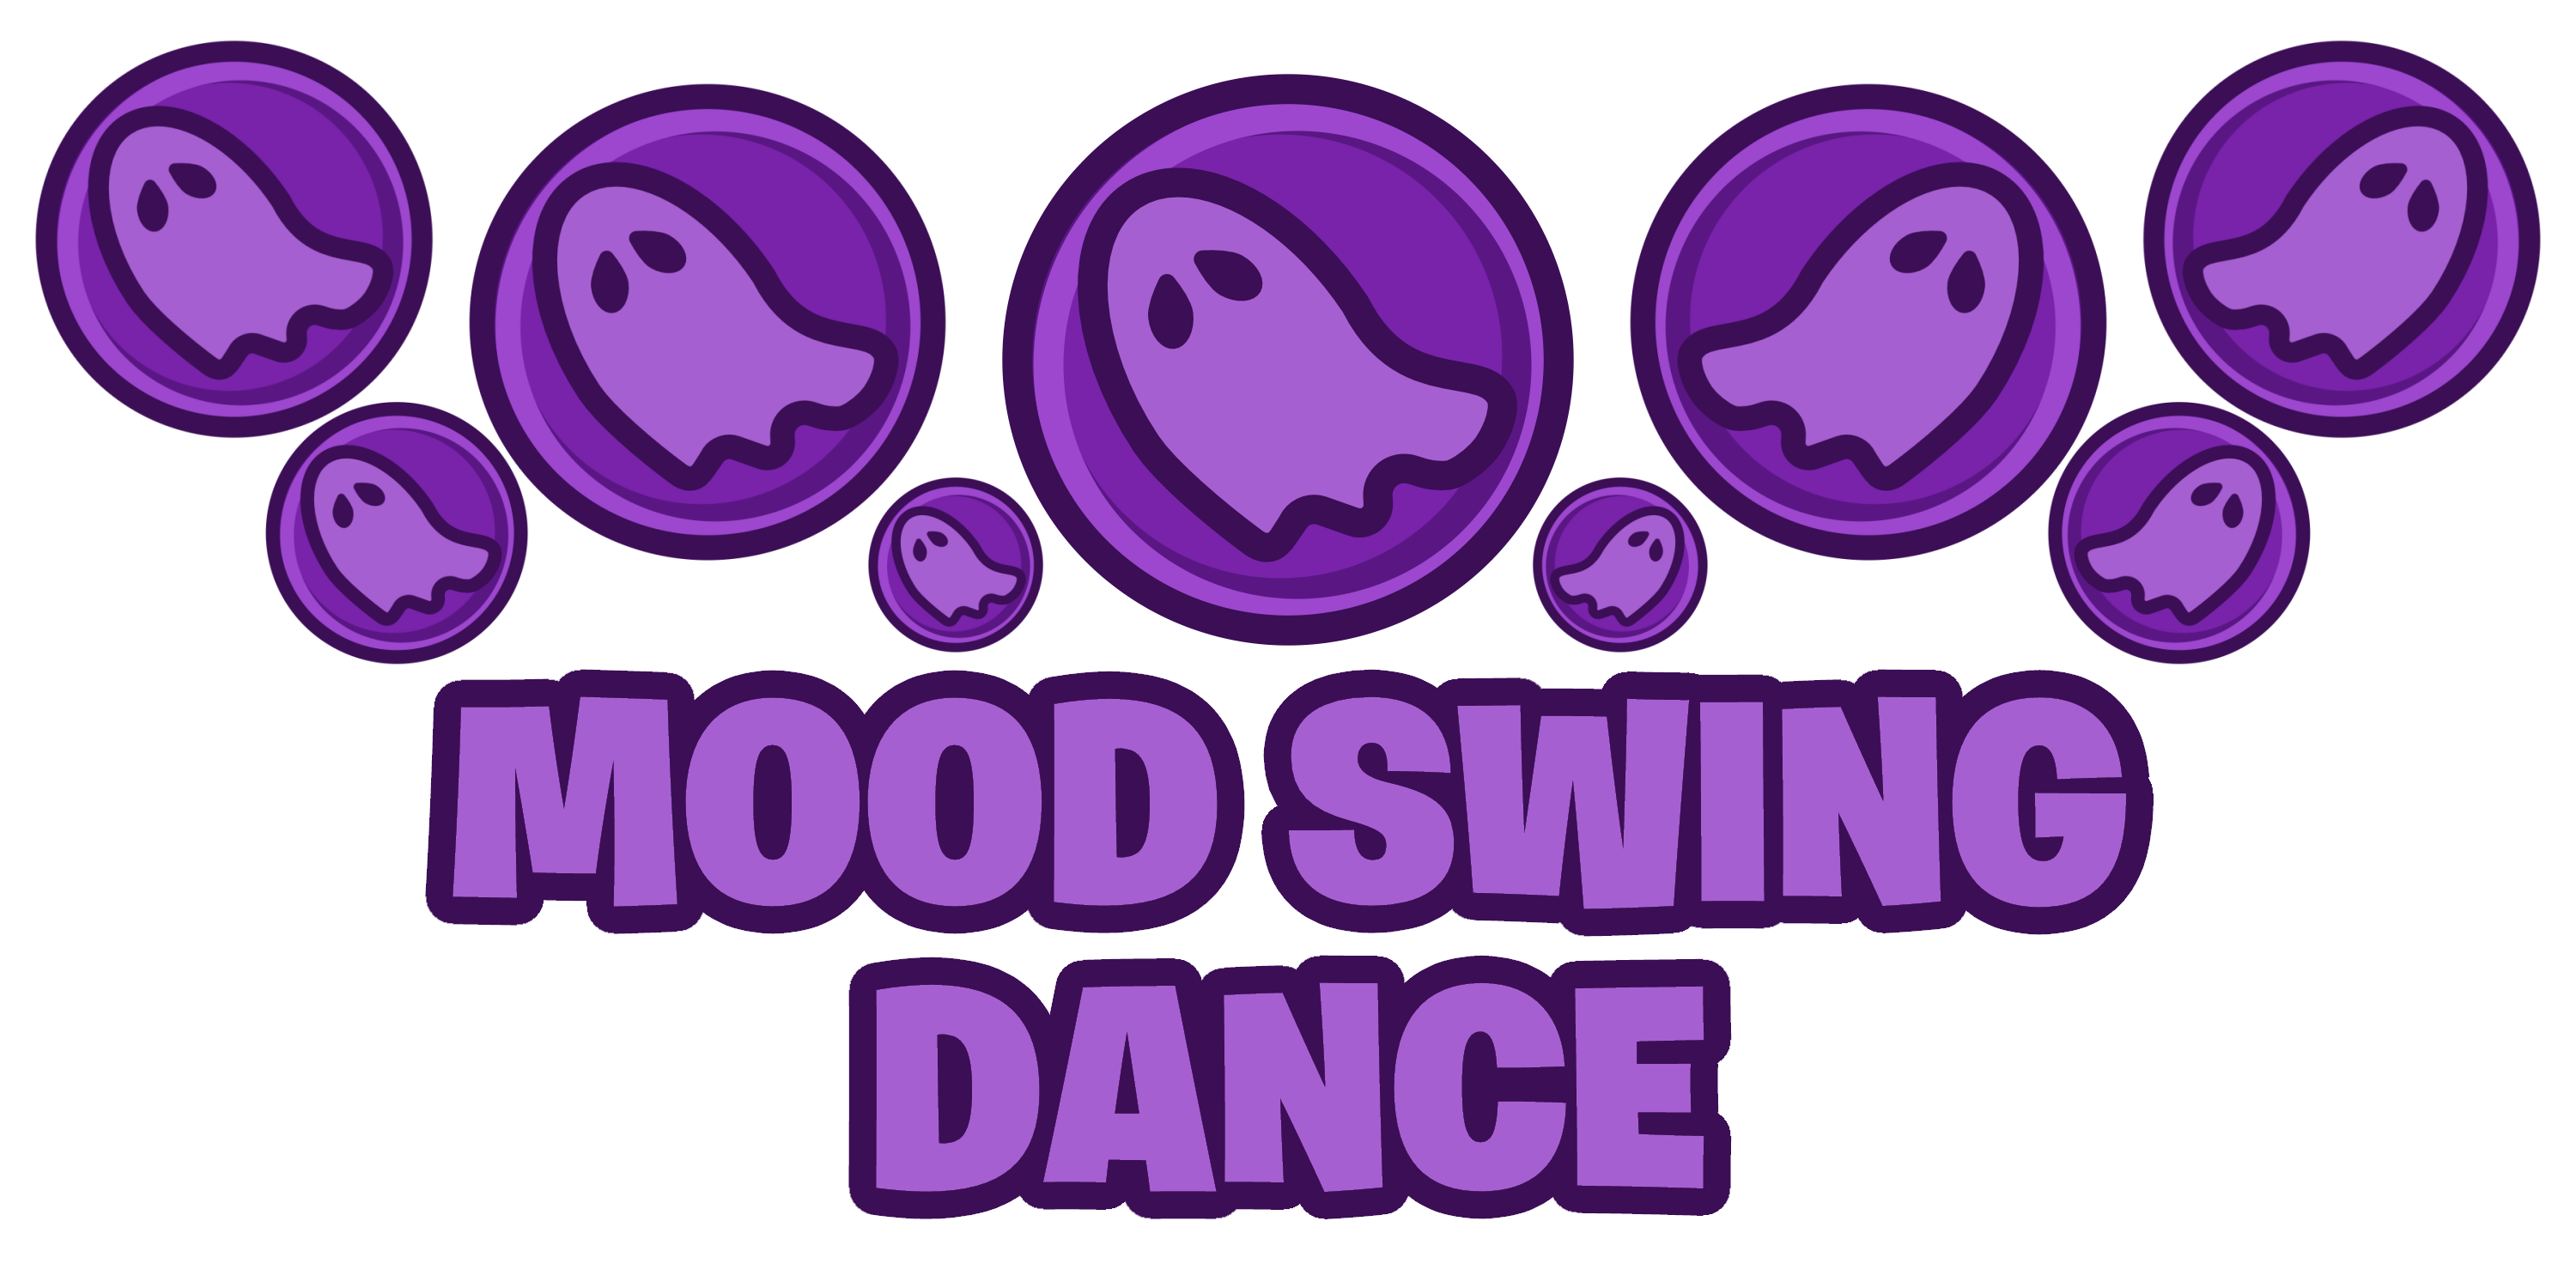 MOOD SWING DANCE | Fandom